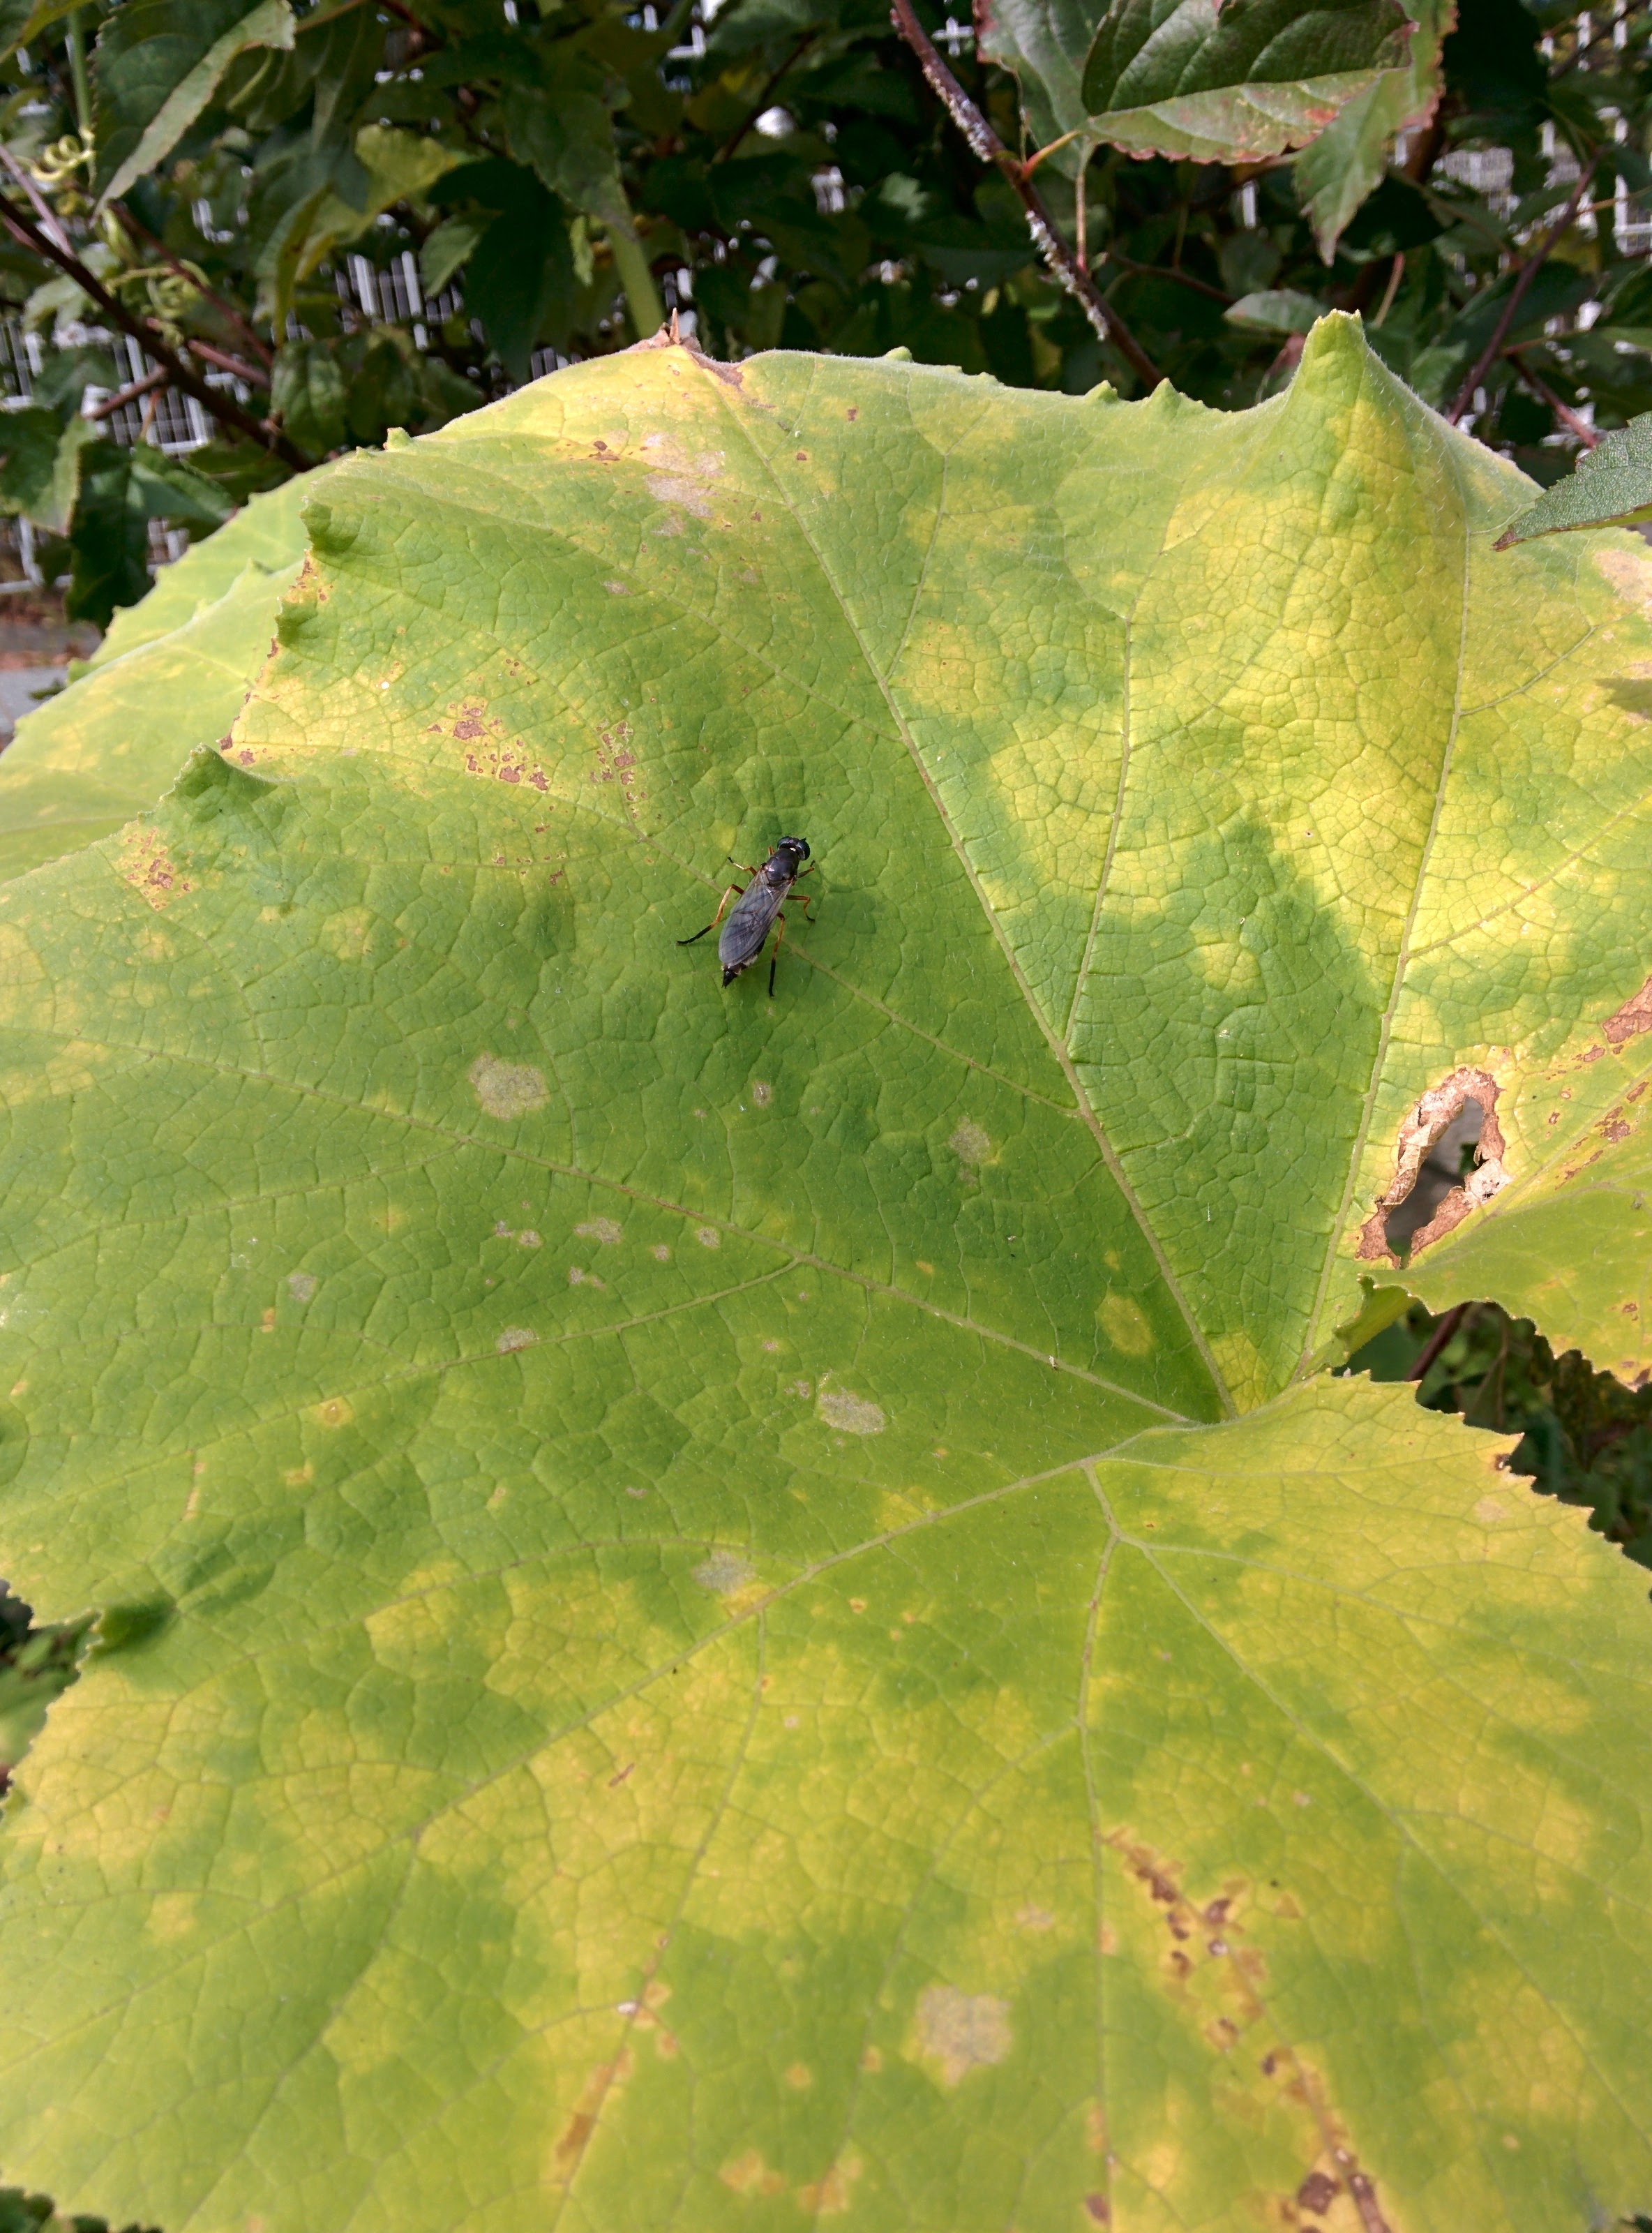 IMG_20151015_111333.jpg 호박잎 위에 앉은 잎벌 -- 동애등에 종류